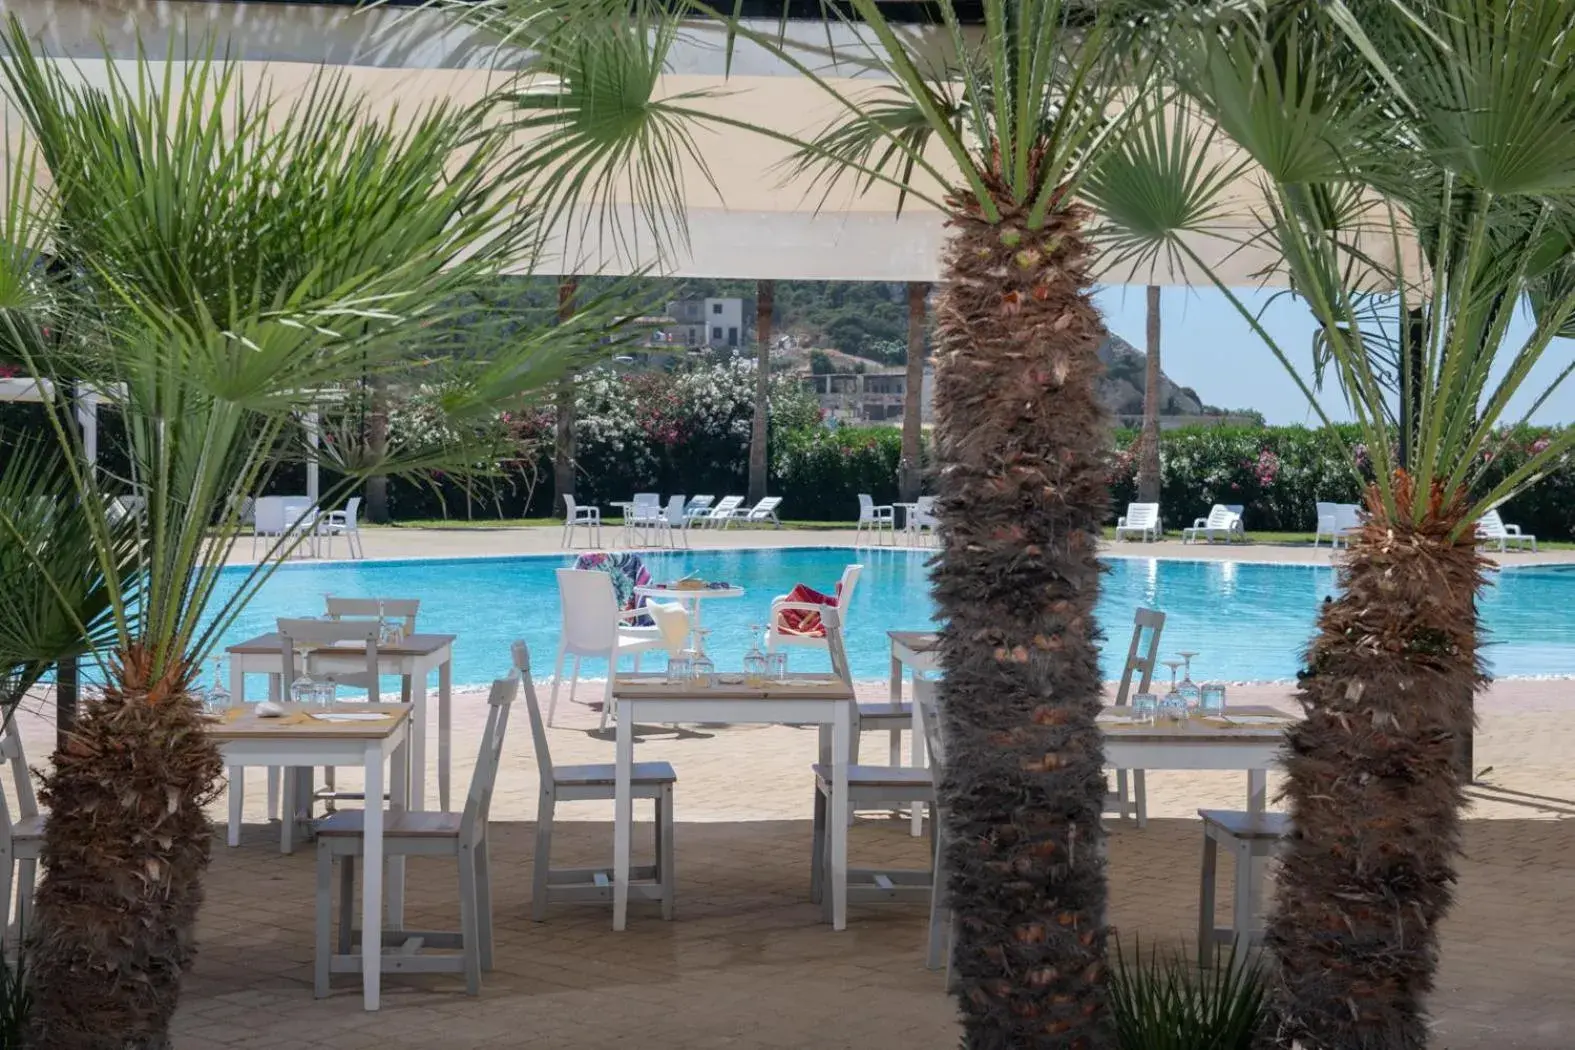 Swimming Pool in Hotel Baia D'oro